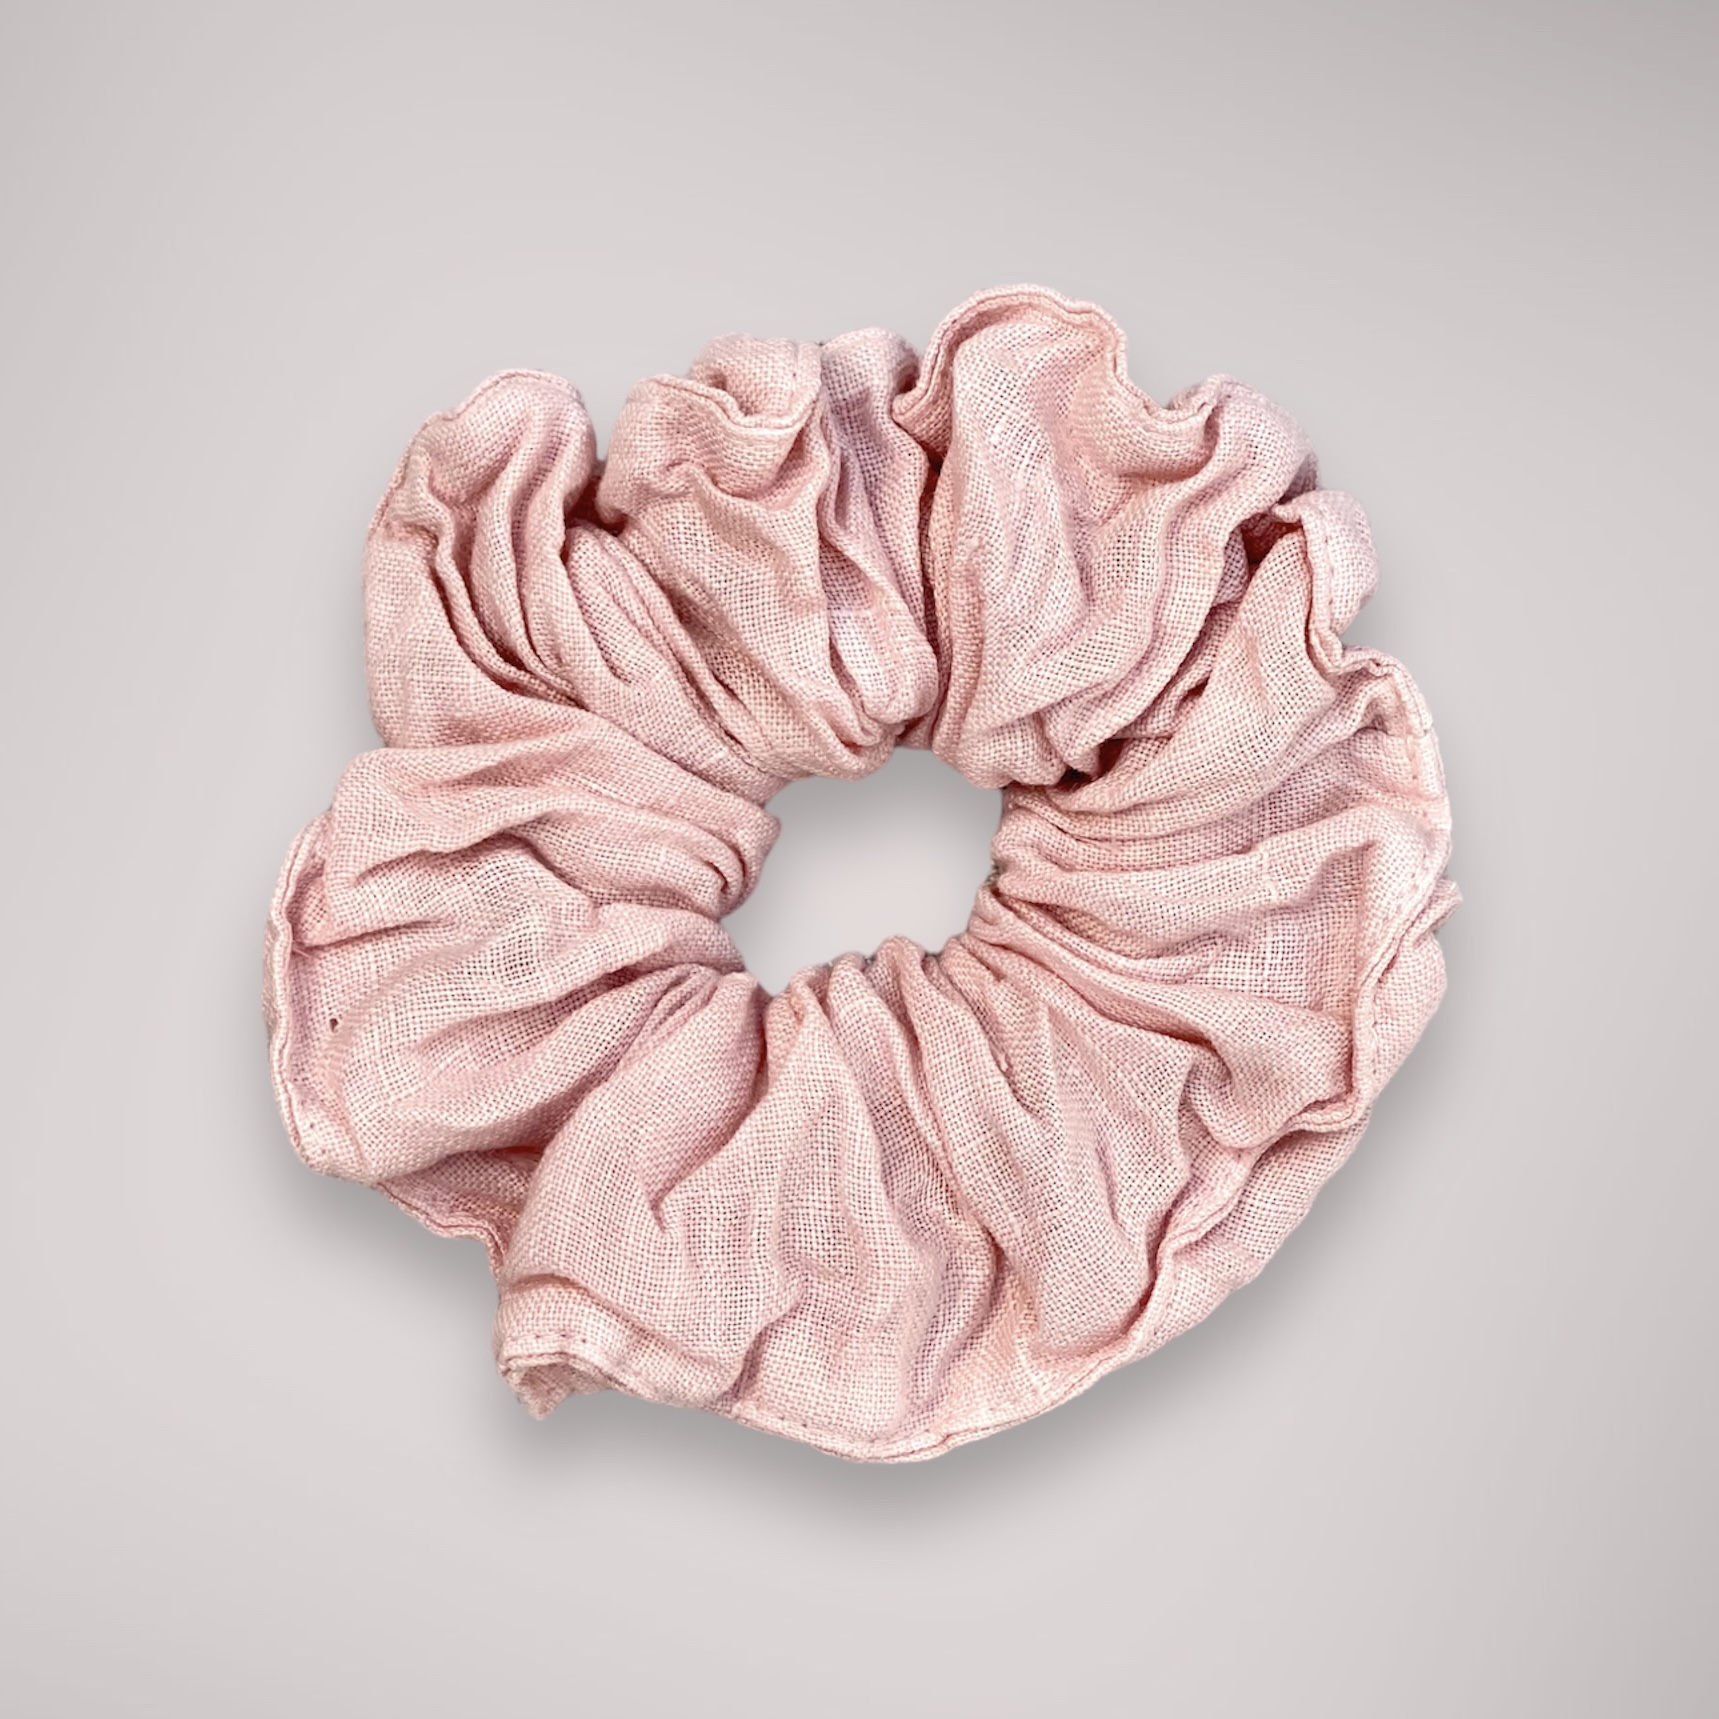 Scrunchie linne rosa I Hårsnodd I Hår accessoarer I Naturvänliga håraccessoarer I Hårband I Hårsnoddar i linne I Hållbart mode I Håraccessoarer naturmaterial